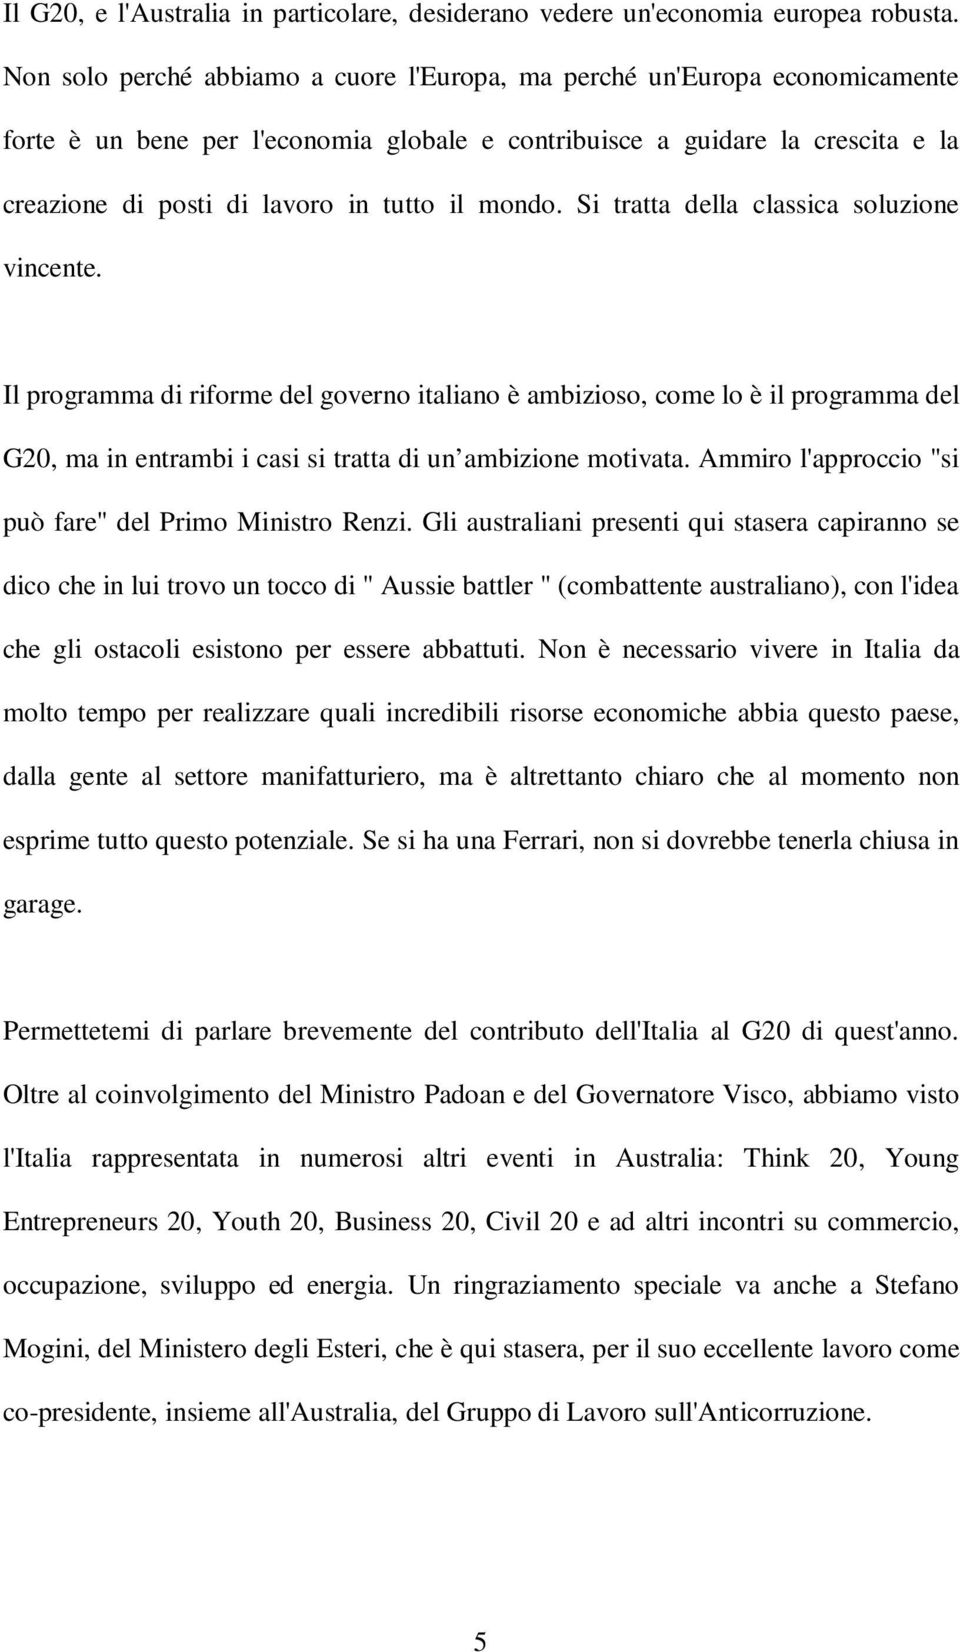 mondo. Si tratta della classica soluzione vincente. Il programma di riforme del governo italiano è ambizioso, come lo è il programma del G20, ma in entrambi i casi si tratta di un ambizione motivata.